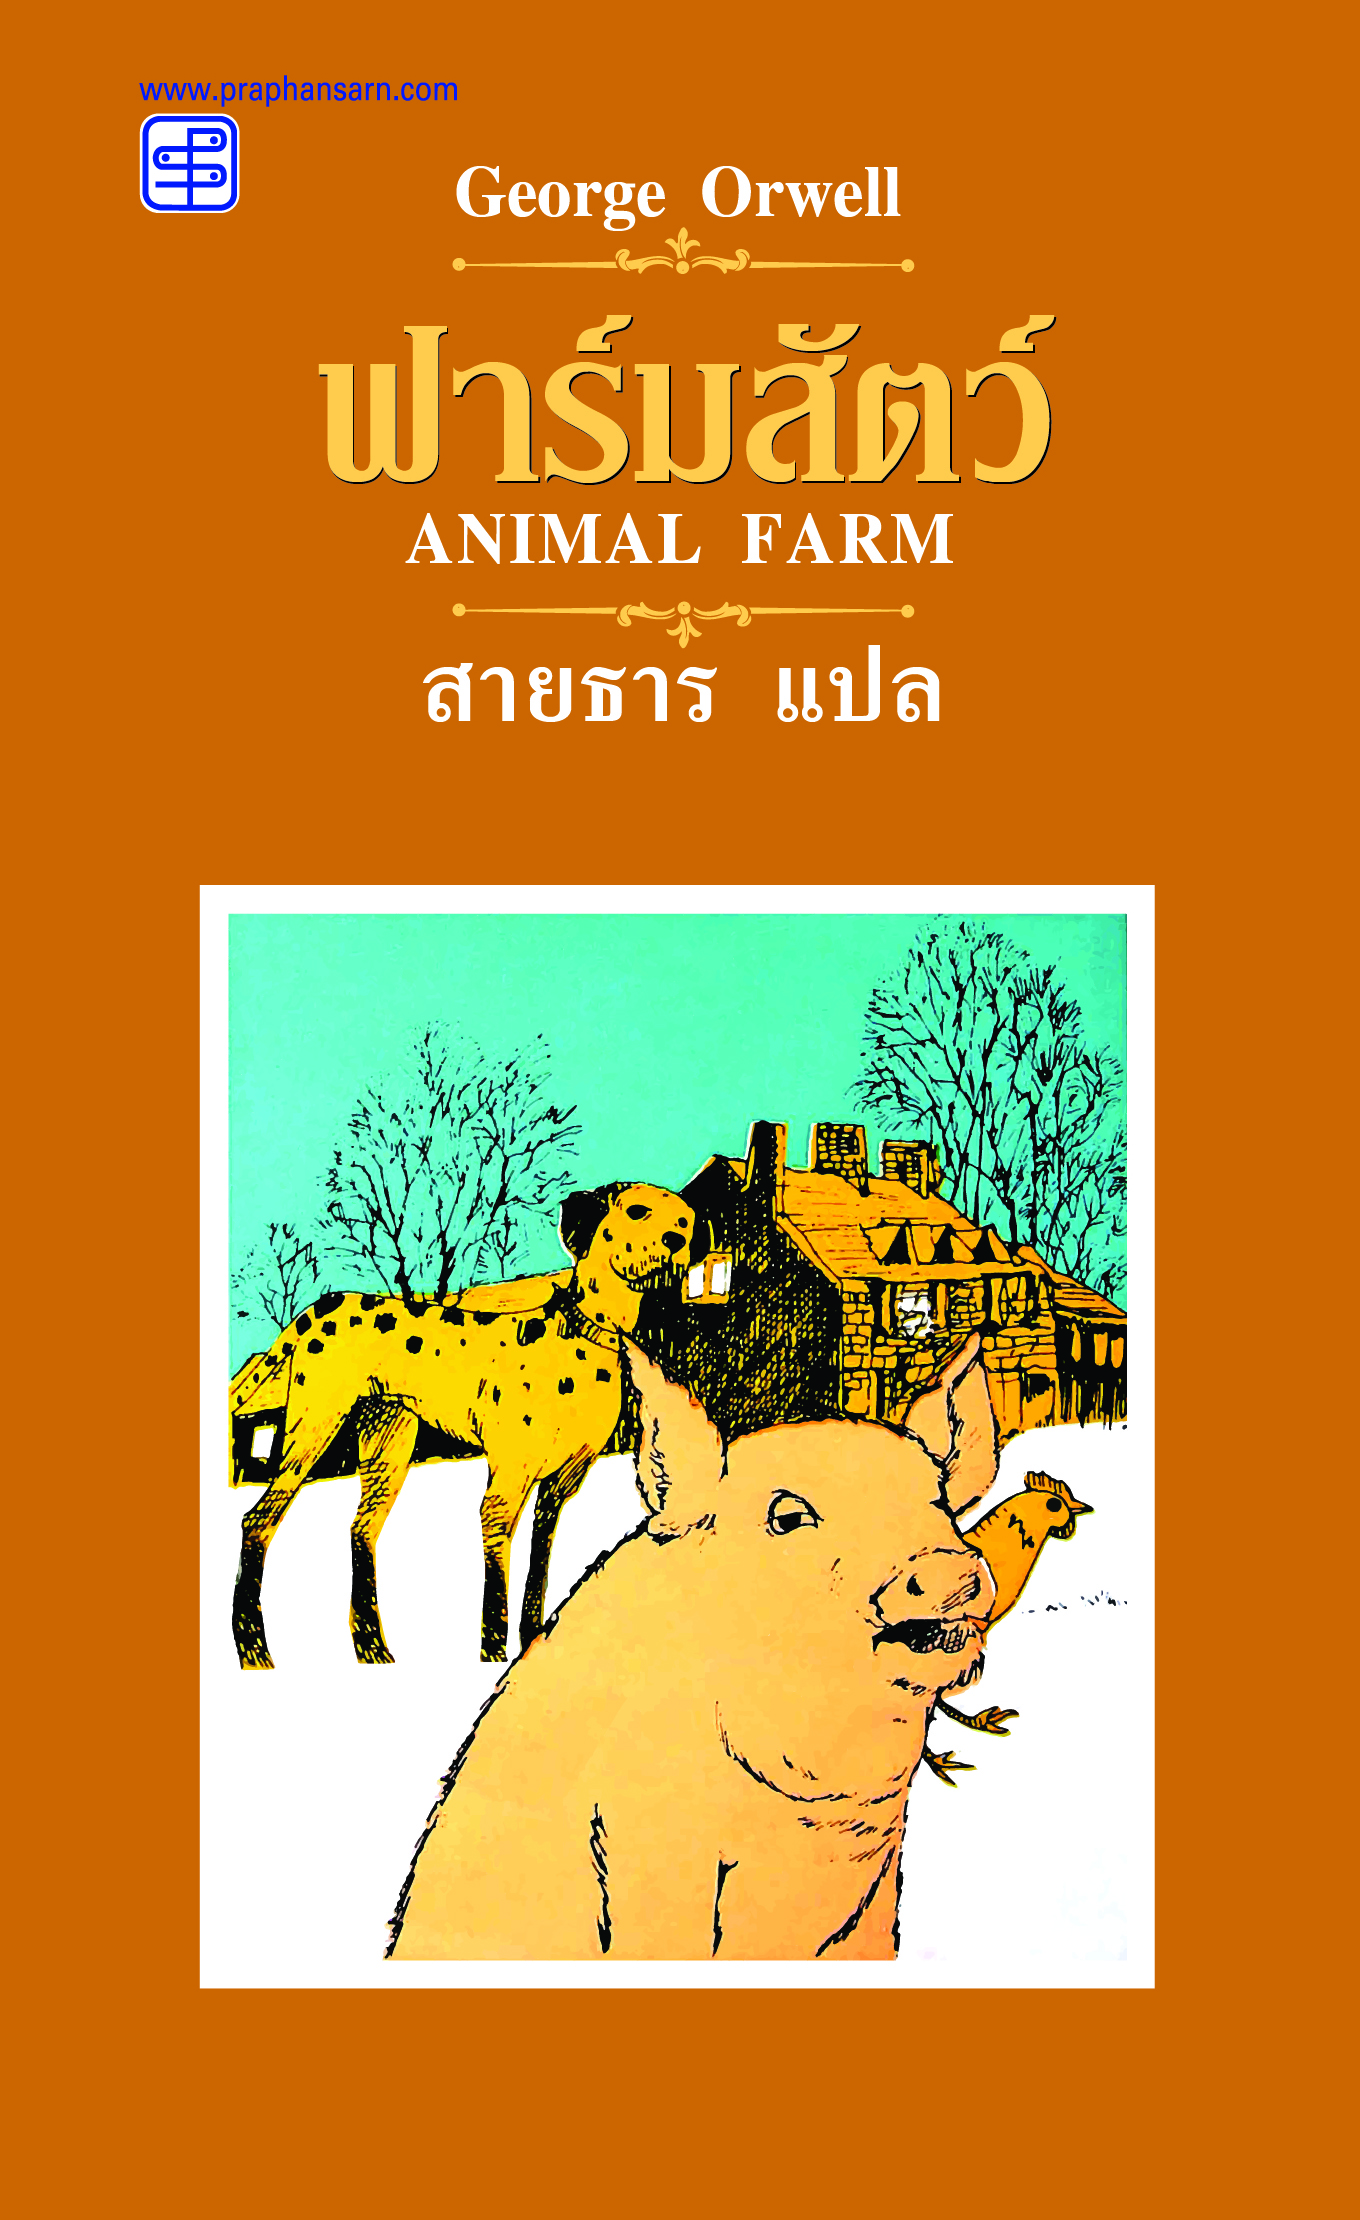 ฟาร์มสัตว์ Animal Farm (ปกแข็ง)